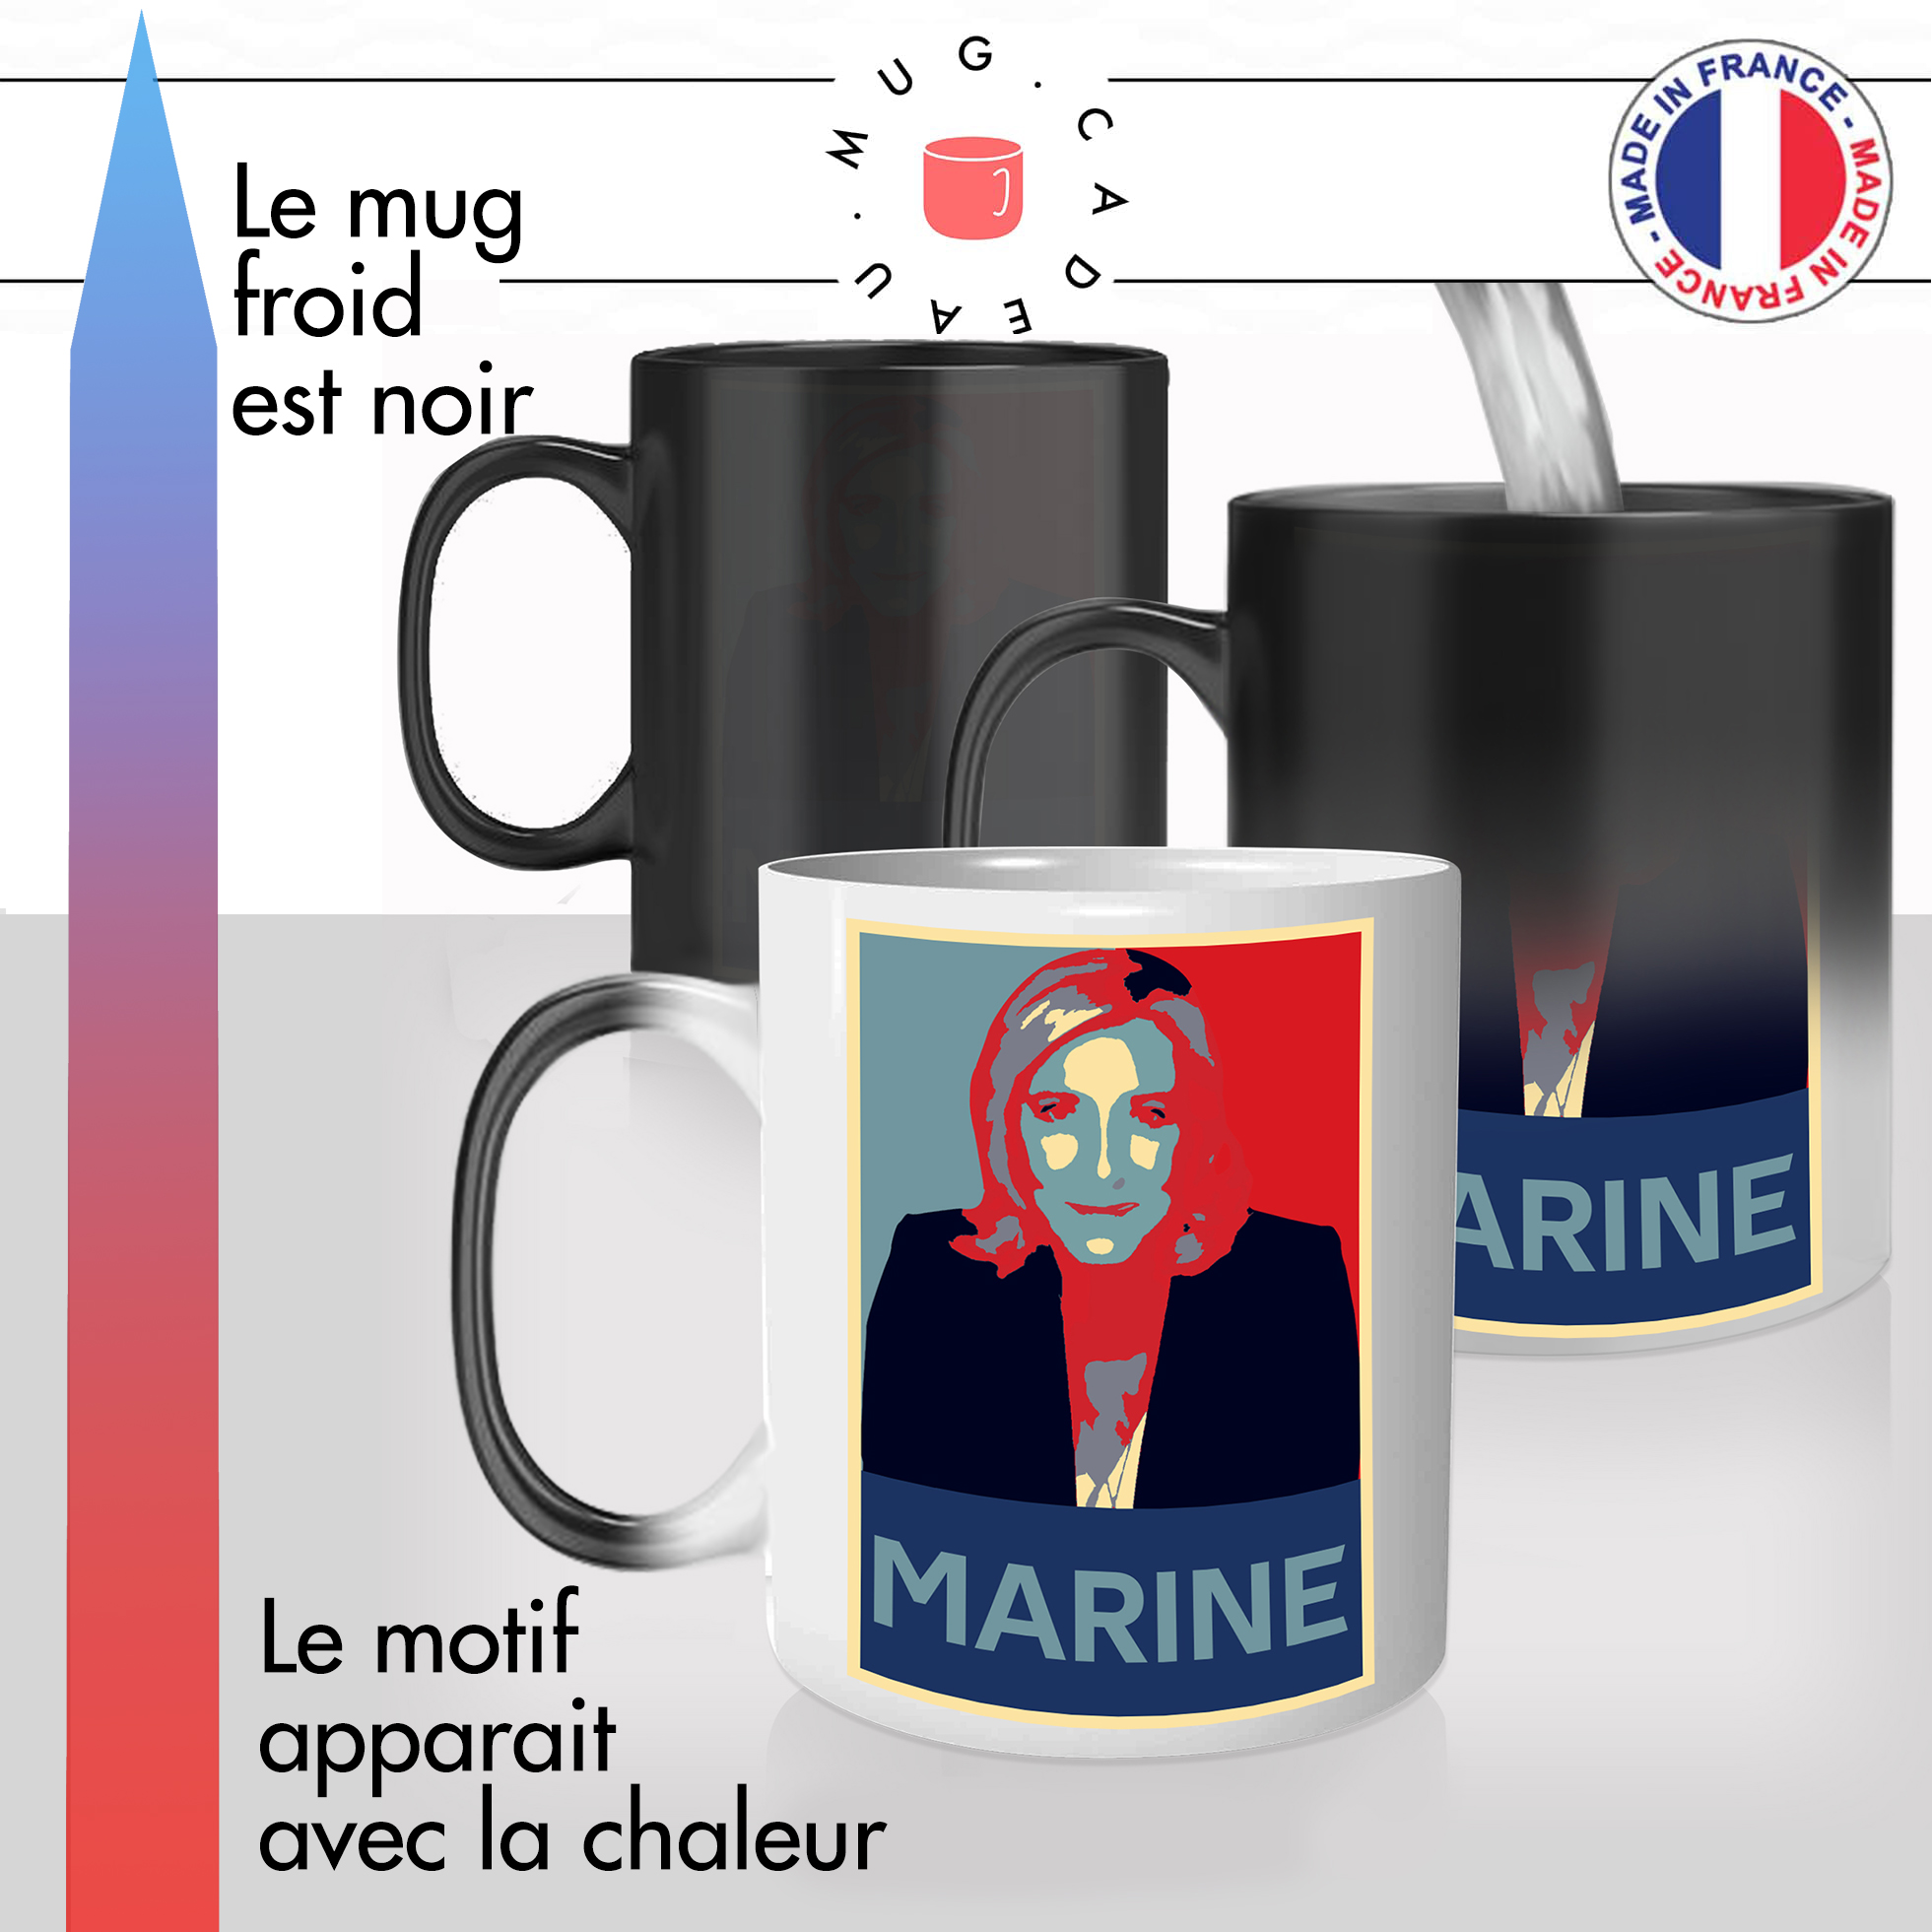 mug-cadeau-magique thermoreactif-marine-le-pen-rassemblement-national-election-presidentielles-2022-second-tour-idée-original-france-2